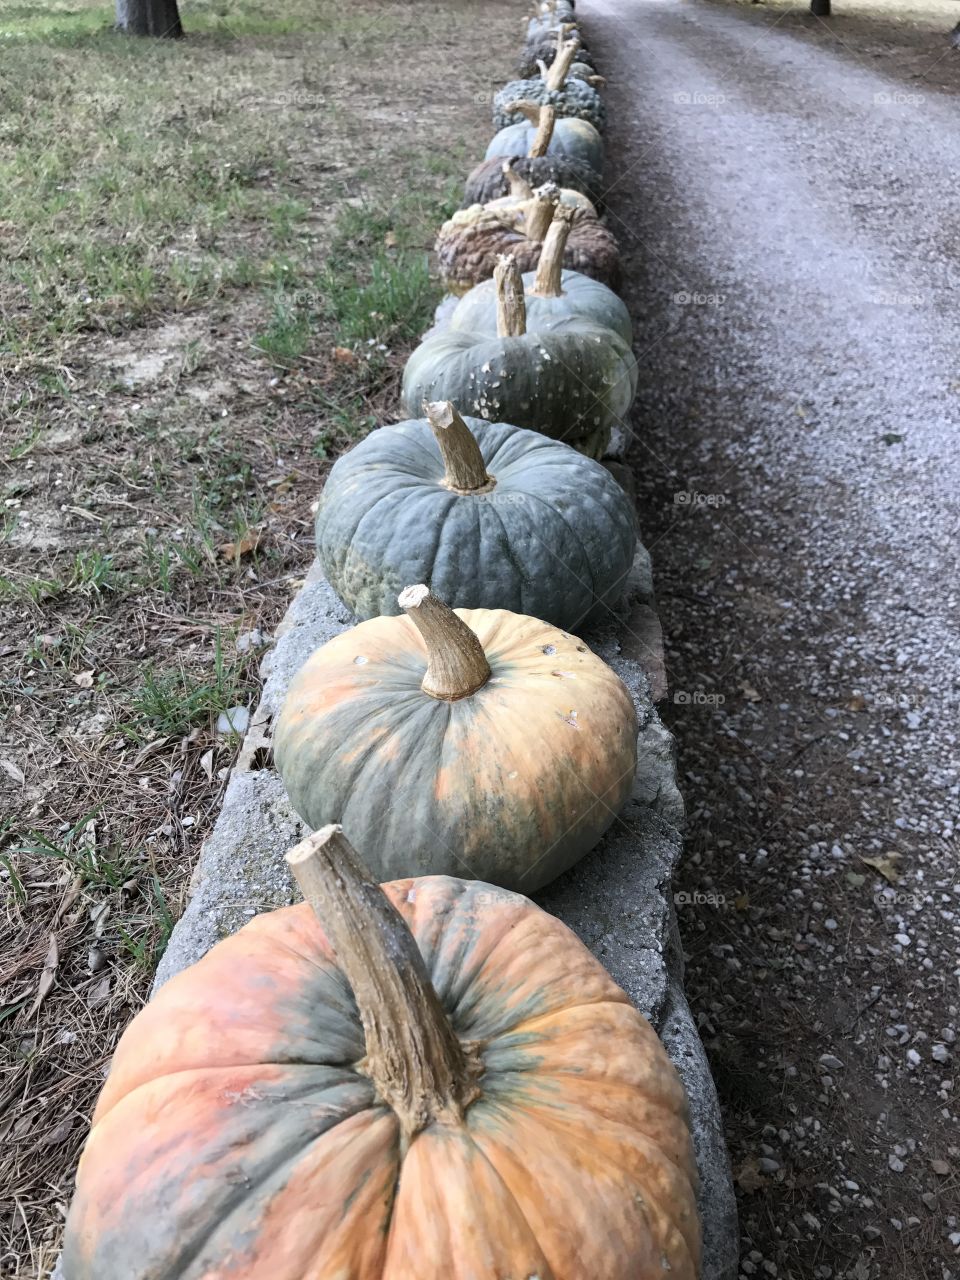 Pumpkins in a row